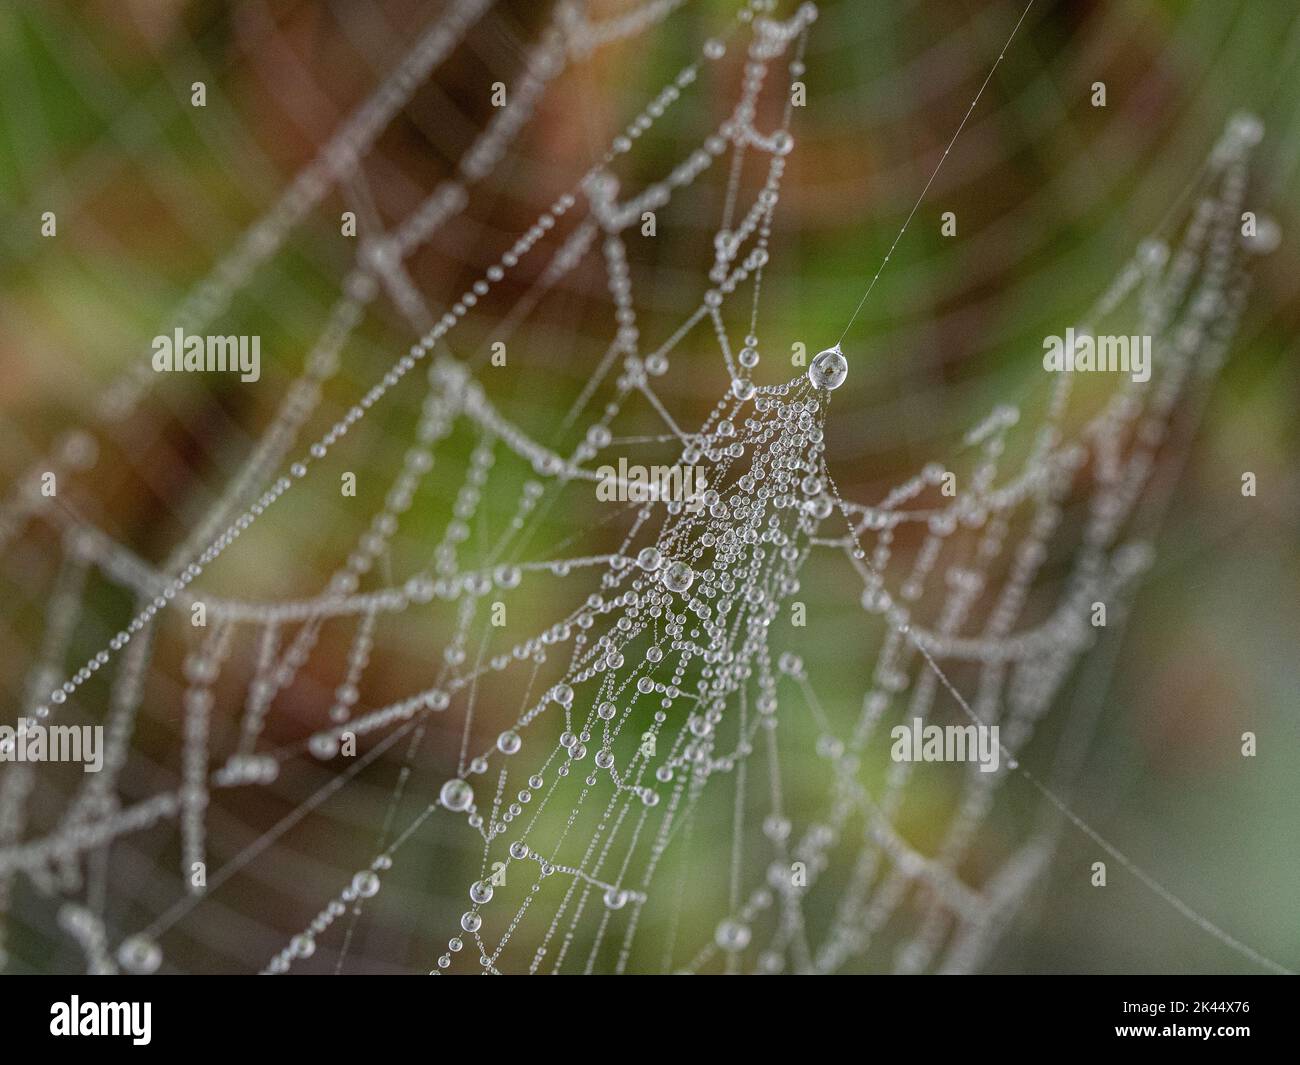 Tautropfen, die auf einem Spinnennetz gesammelt wurden, das im frühen Morgenlicht funkelt Stockfoto